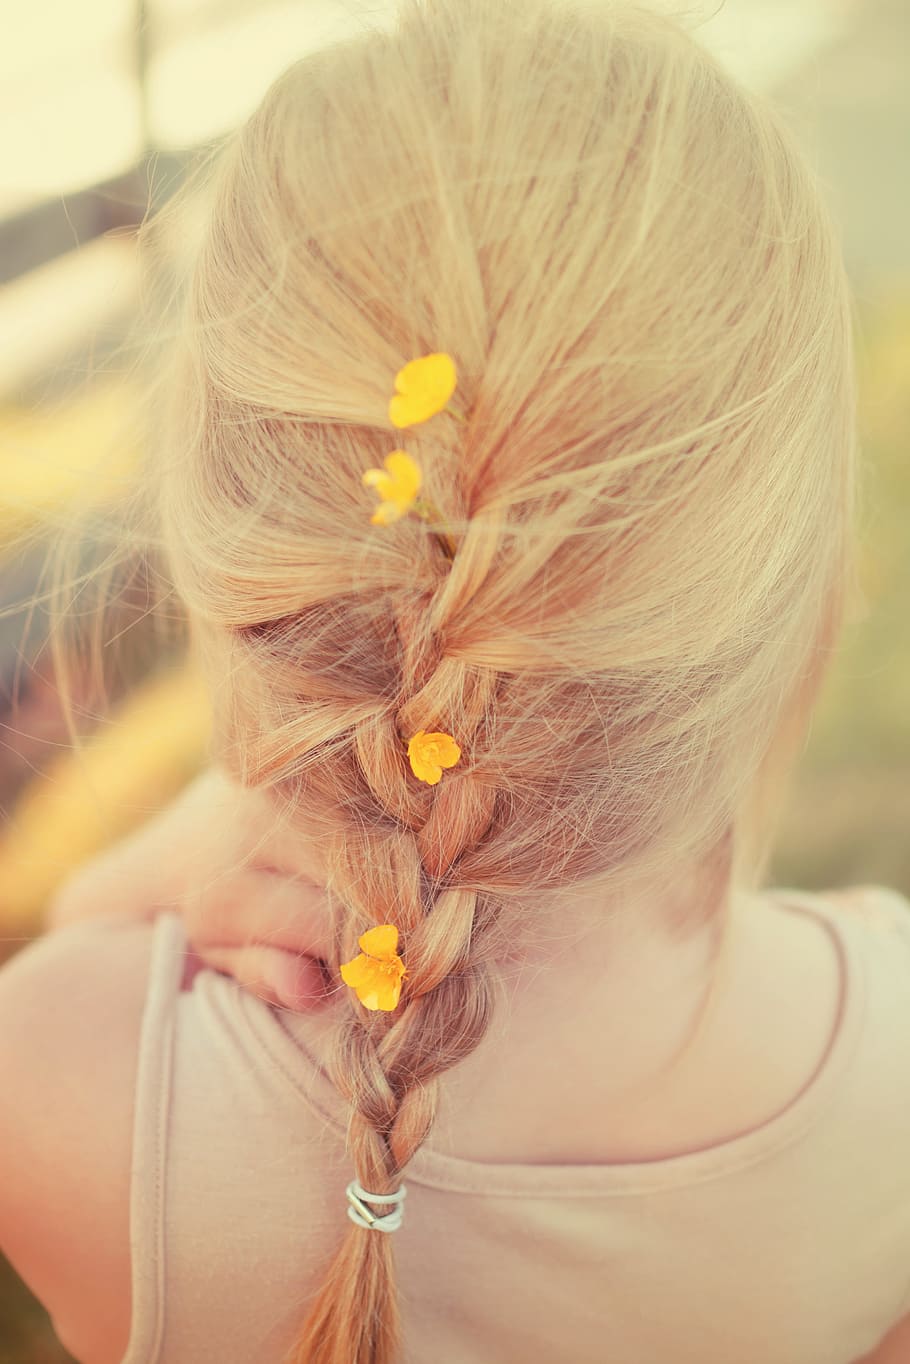 braided, hair, yellow, flowers, summer, girl, merge, one person, women, headshot